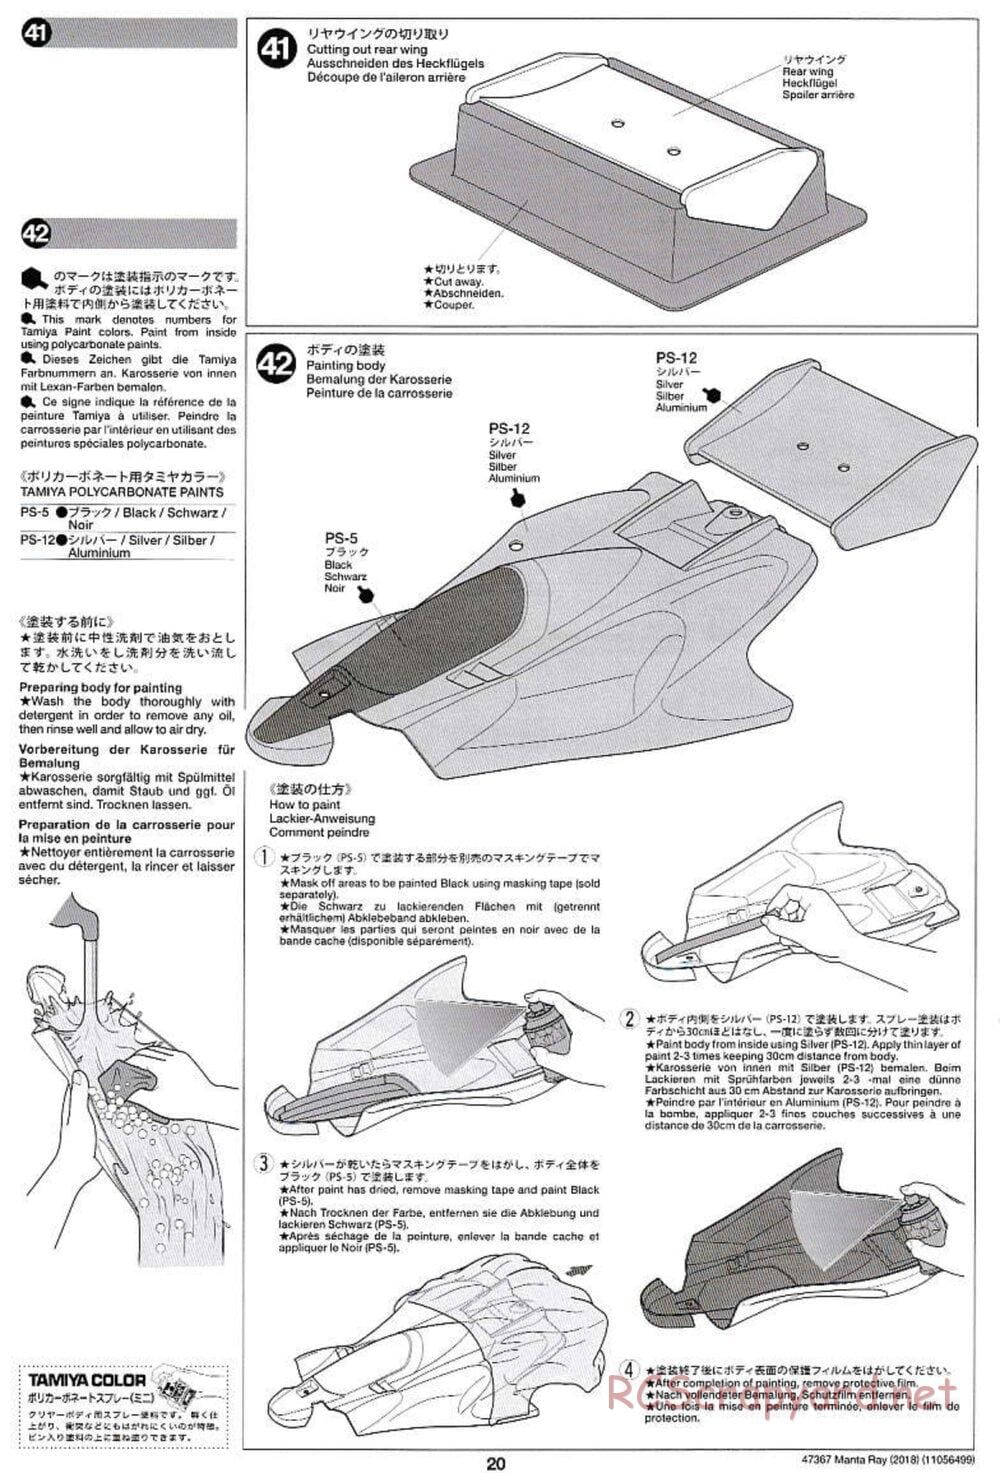 Tamiya - Manta Ray 2018 - DF-01 Chassis - Manual - Page 20